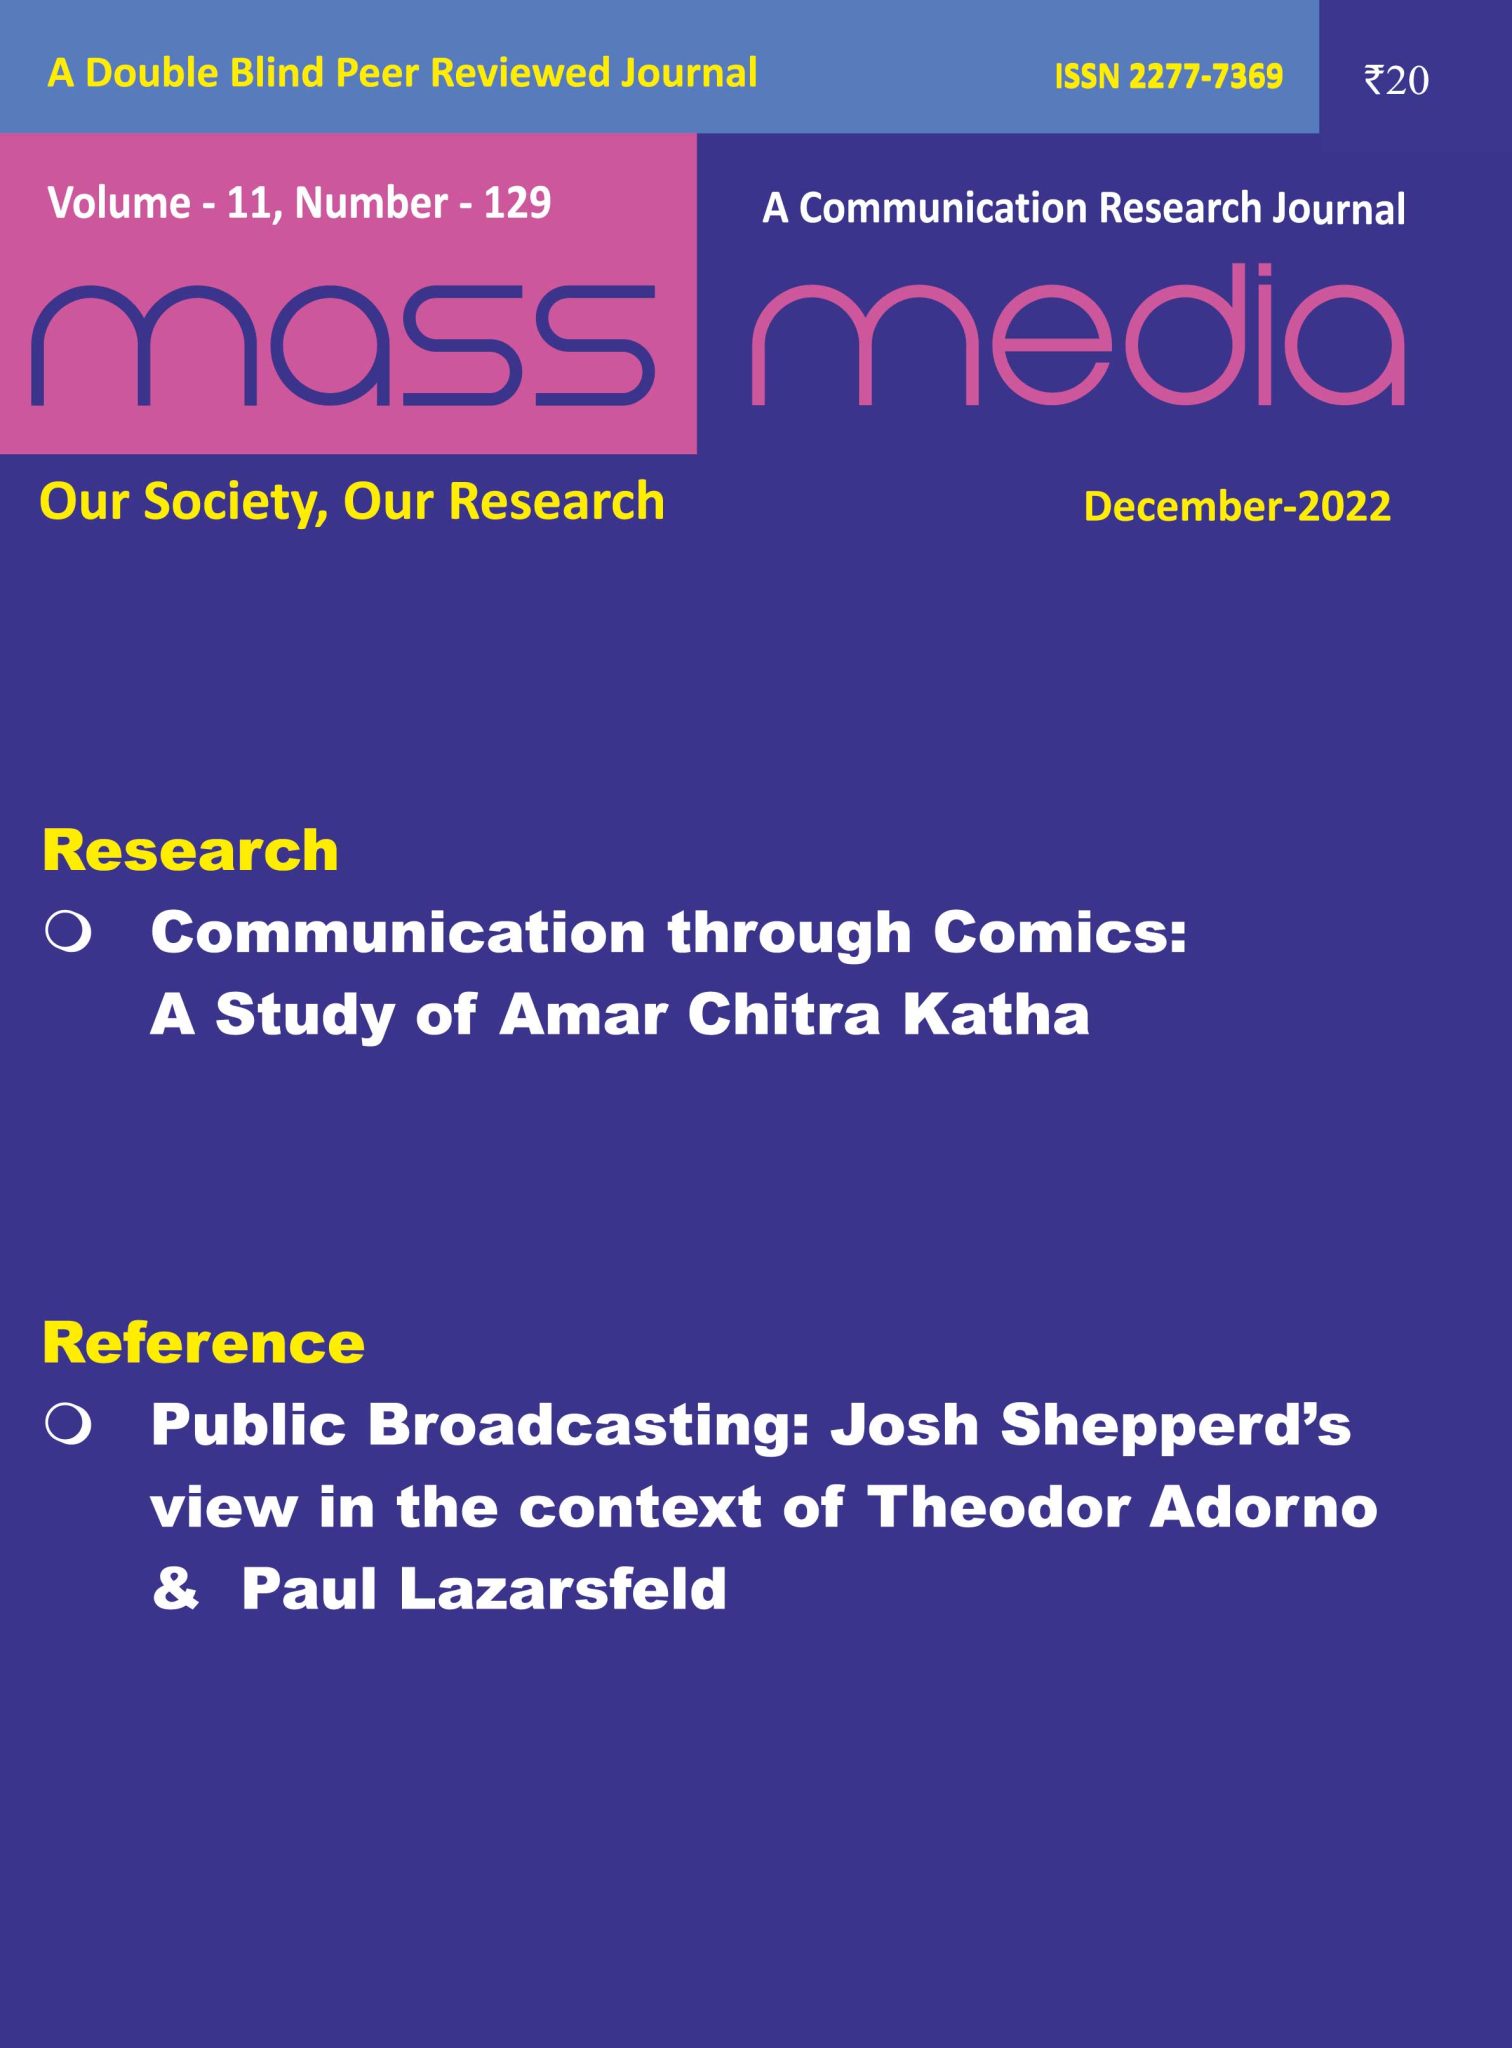 Mass Media (December 2022)